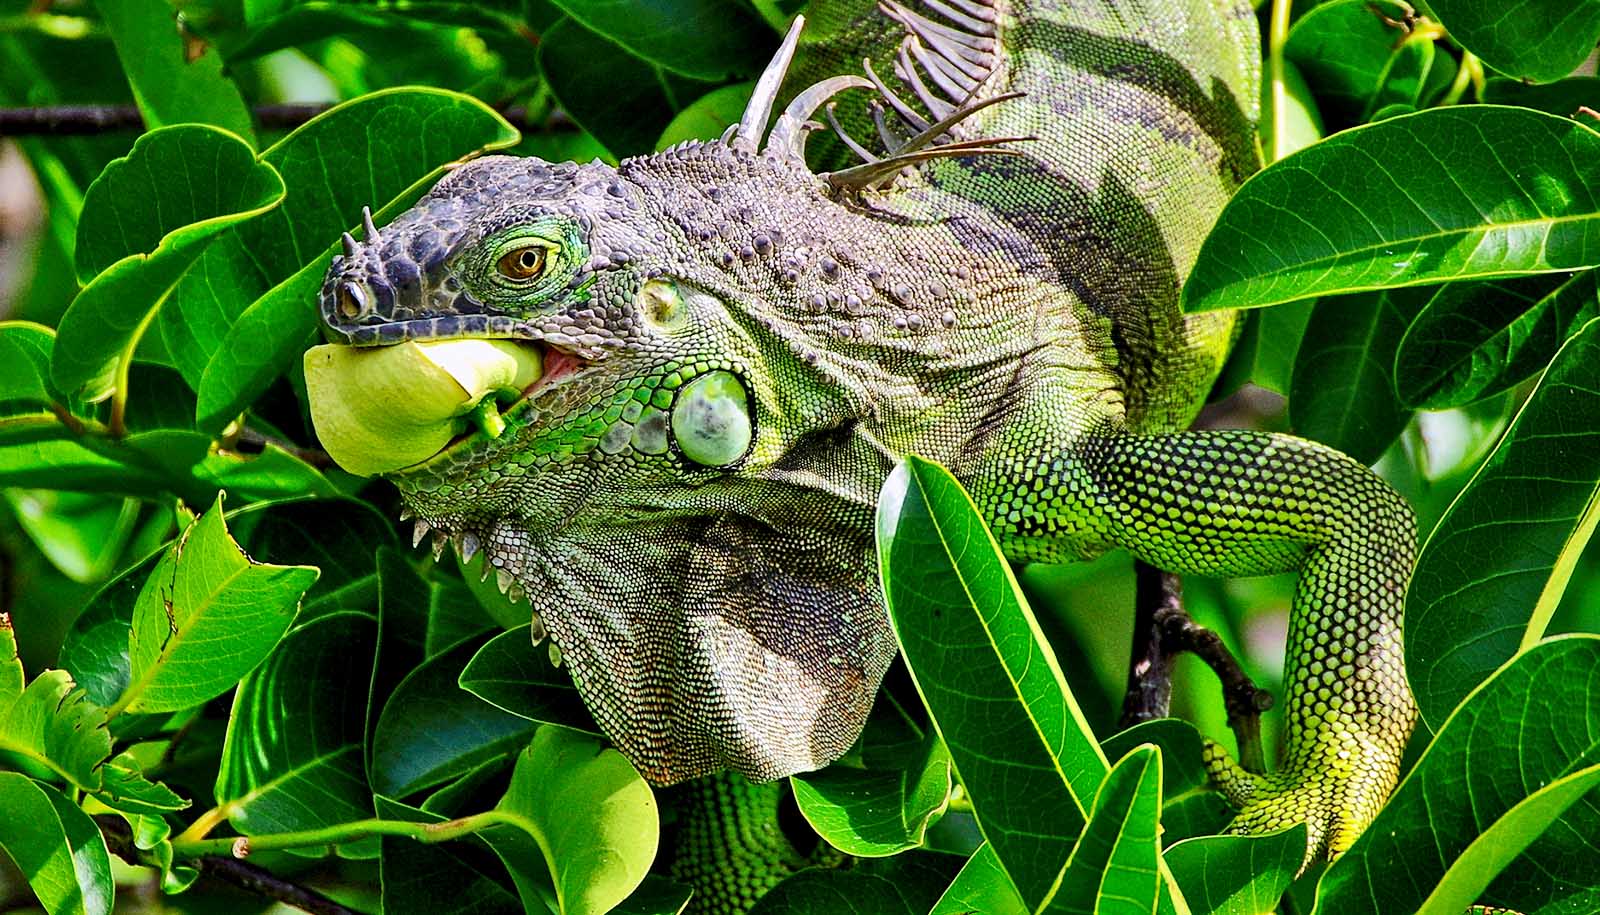 iguana eating fruit among leaves